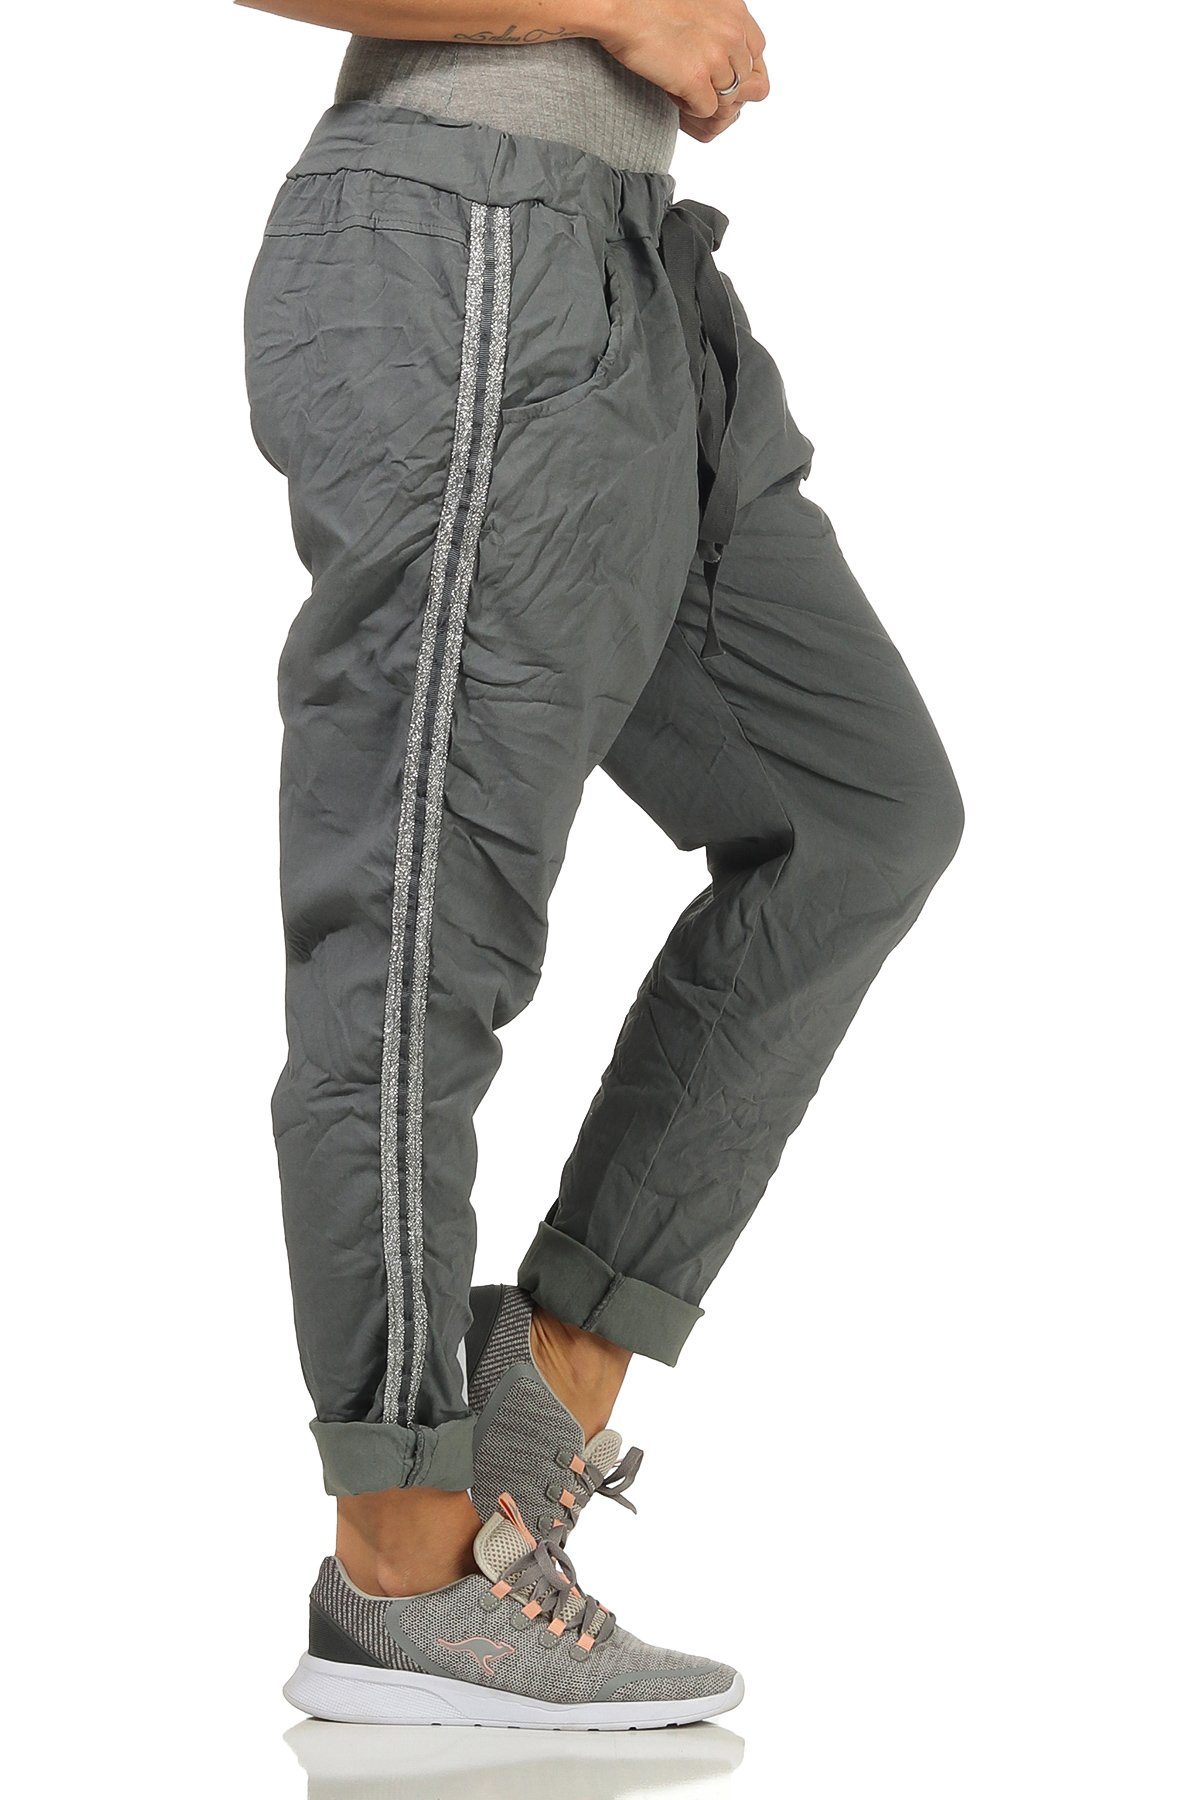 Mississhop Jogginghose Damen Hose Baumwollhose mit Seitlichen Silberstreifen M.348 Graphit